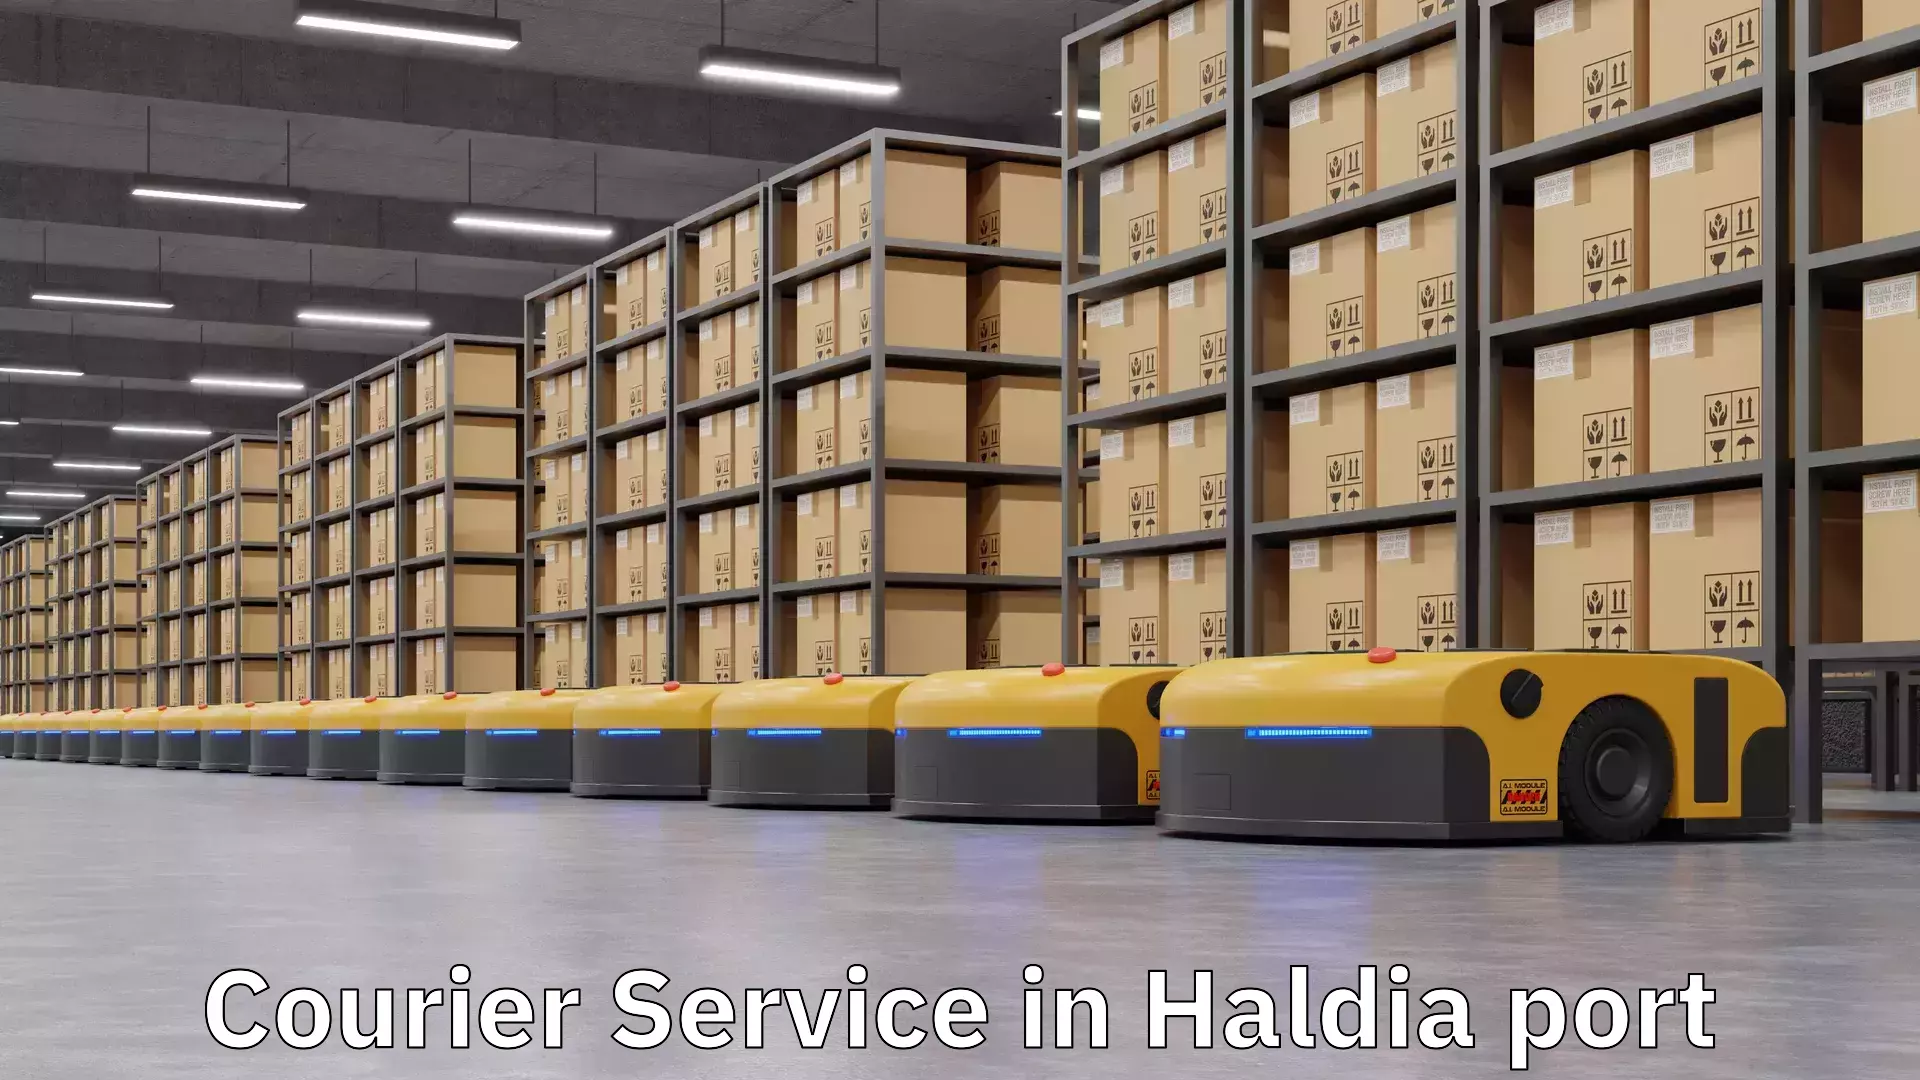 Affordable parcel service in Haldia port